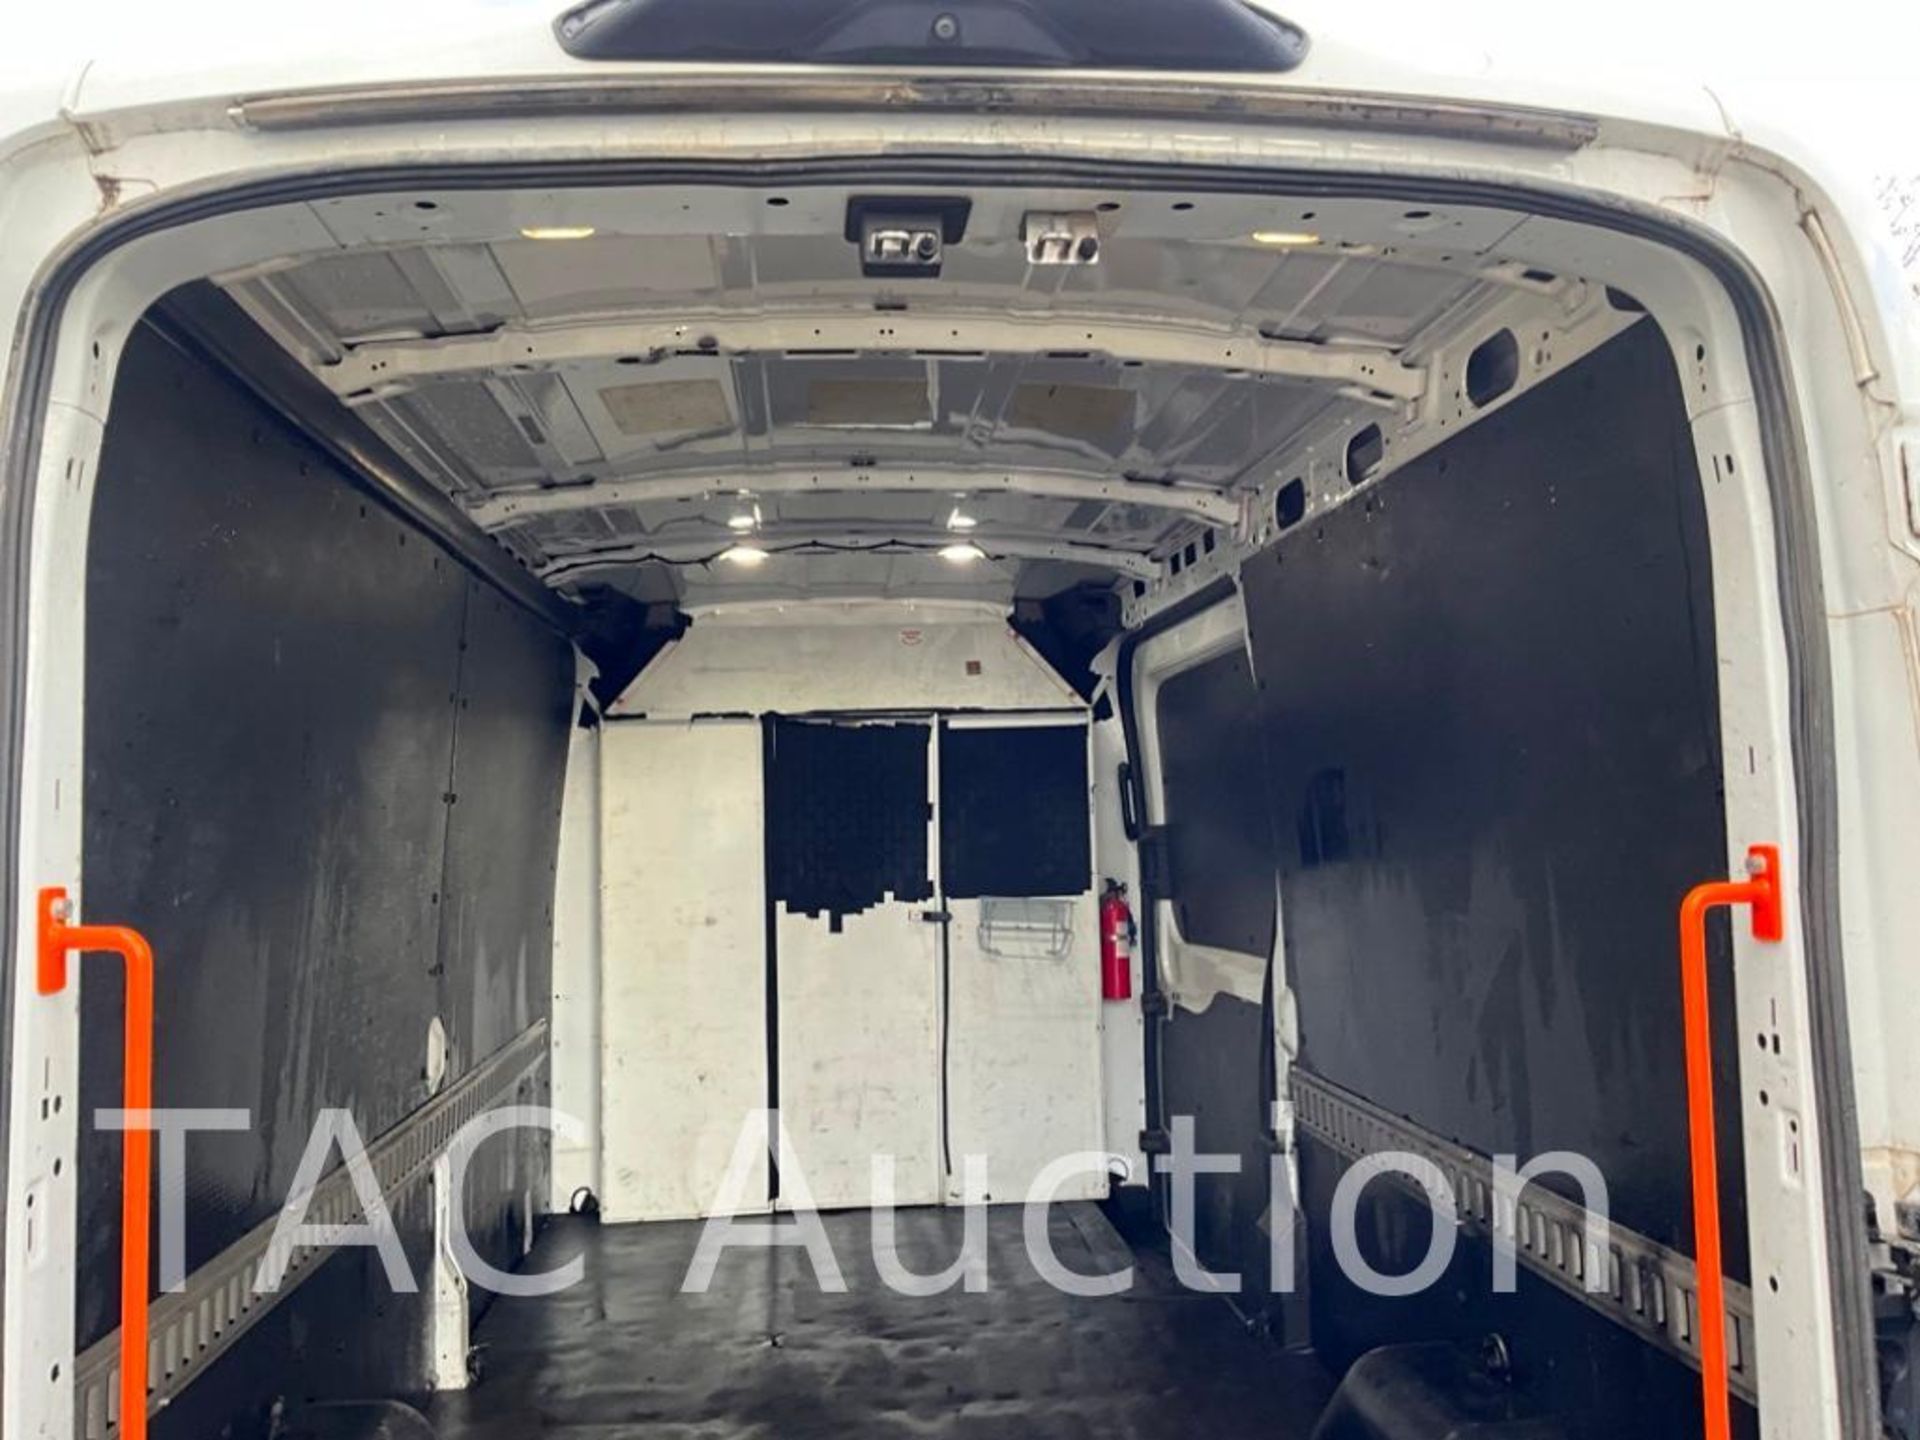 2019 Ford Transit 150 Cargo Van - Image 38 of 56